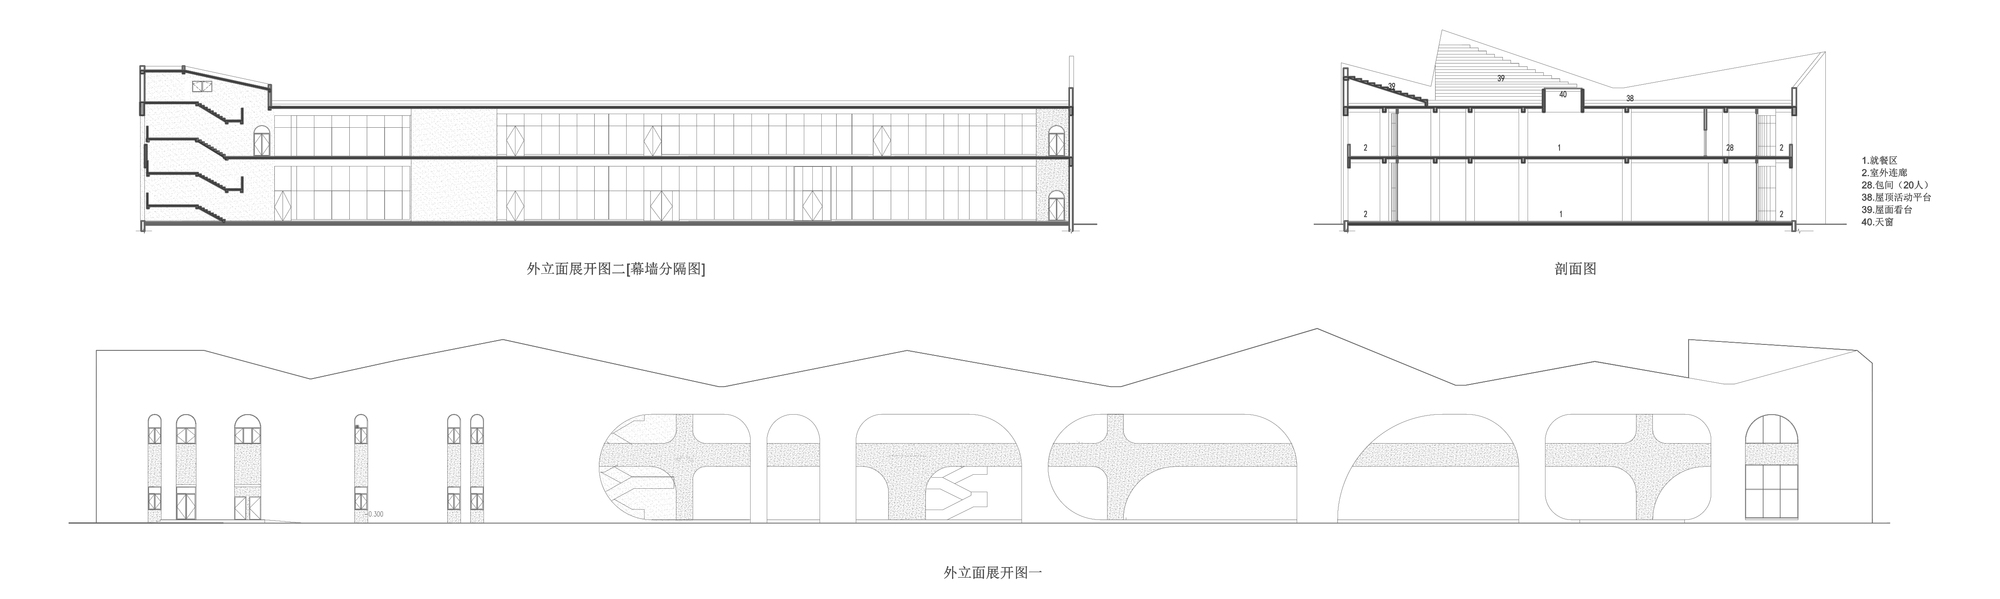 远洋蔚蓝海岸第三食堂—北北美食中心建筑设计/上海彬占